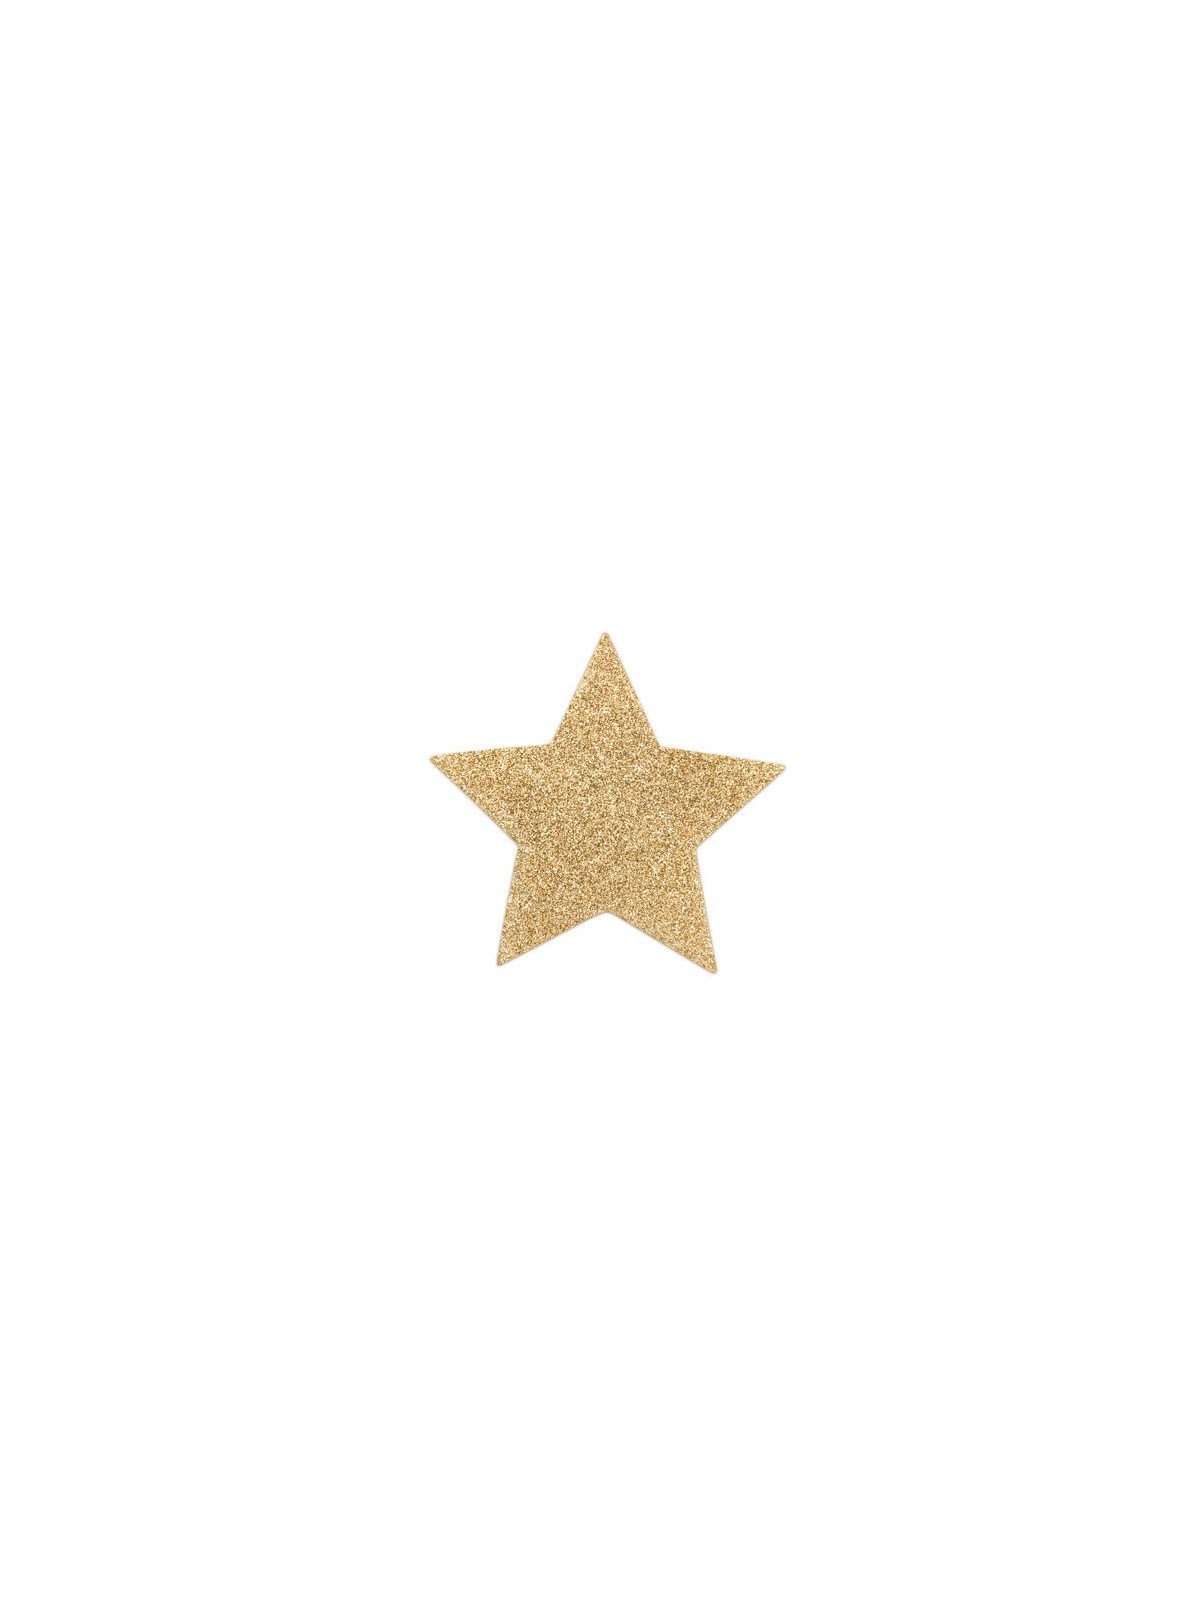 Bijoux Pezoneras Flash Estrella - Comprar Accesorio lencería Bijoux Indiscrets - Accesorios lencería (1)